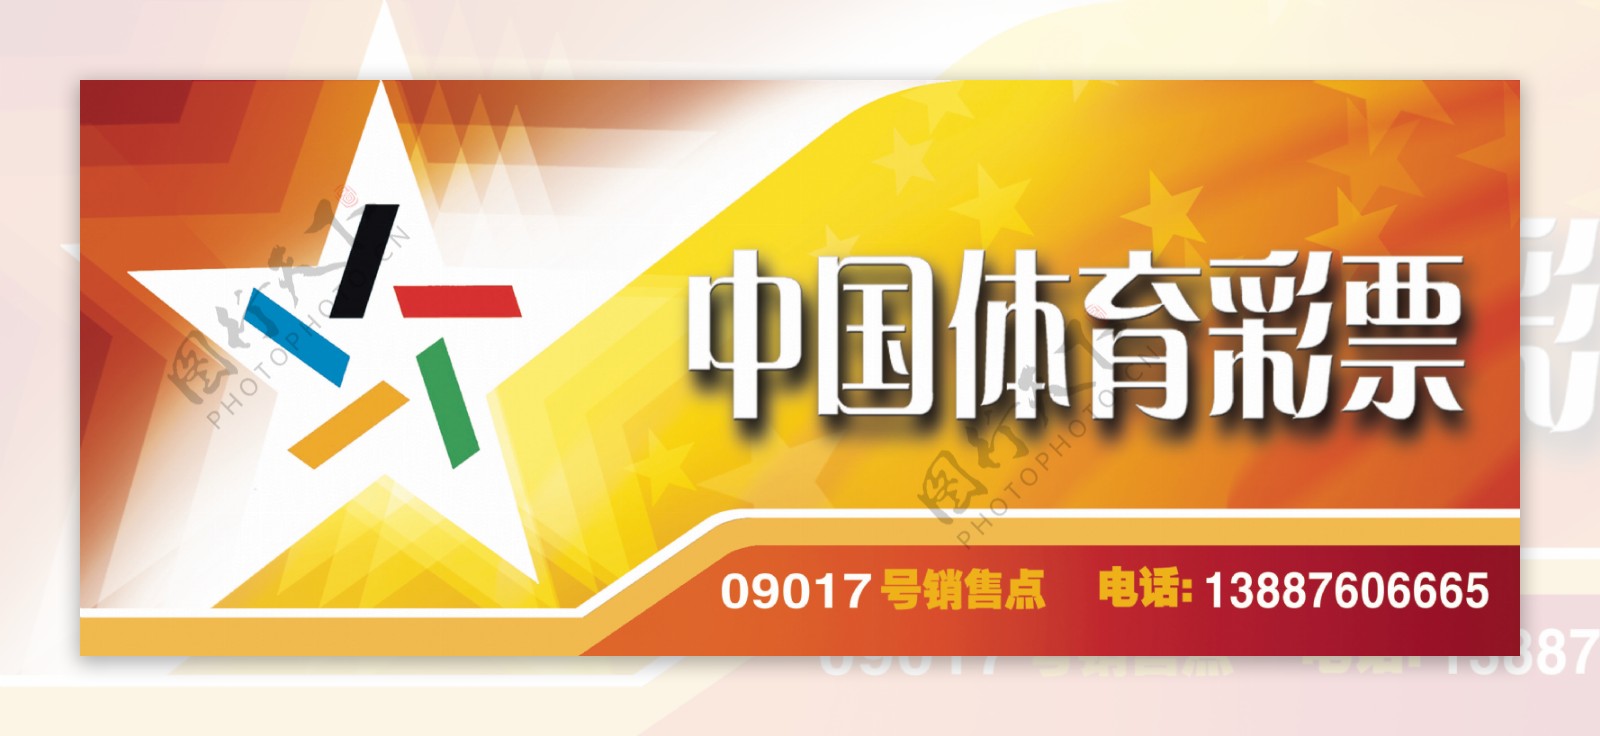 中国体育彩票版头设计